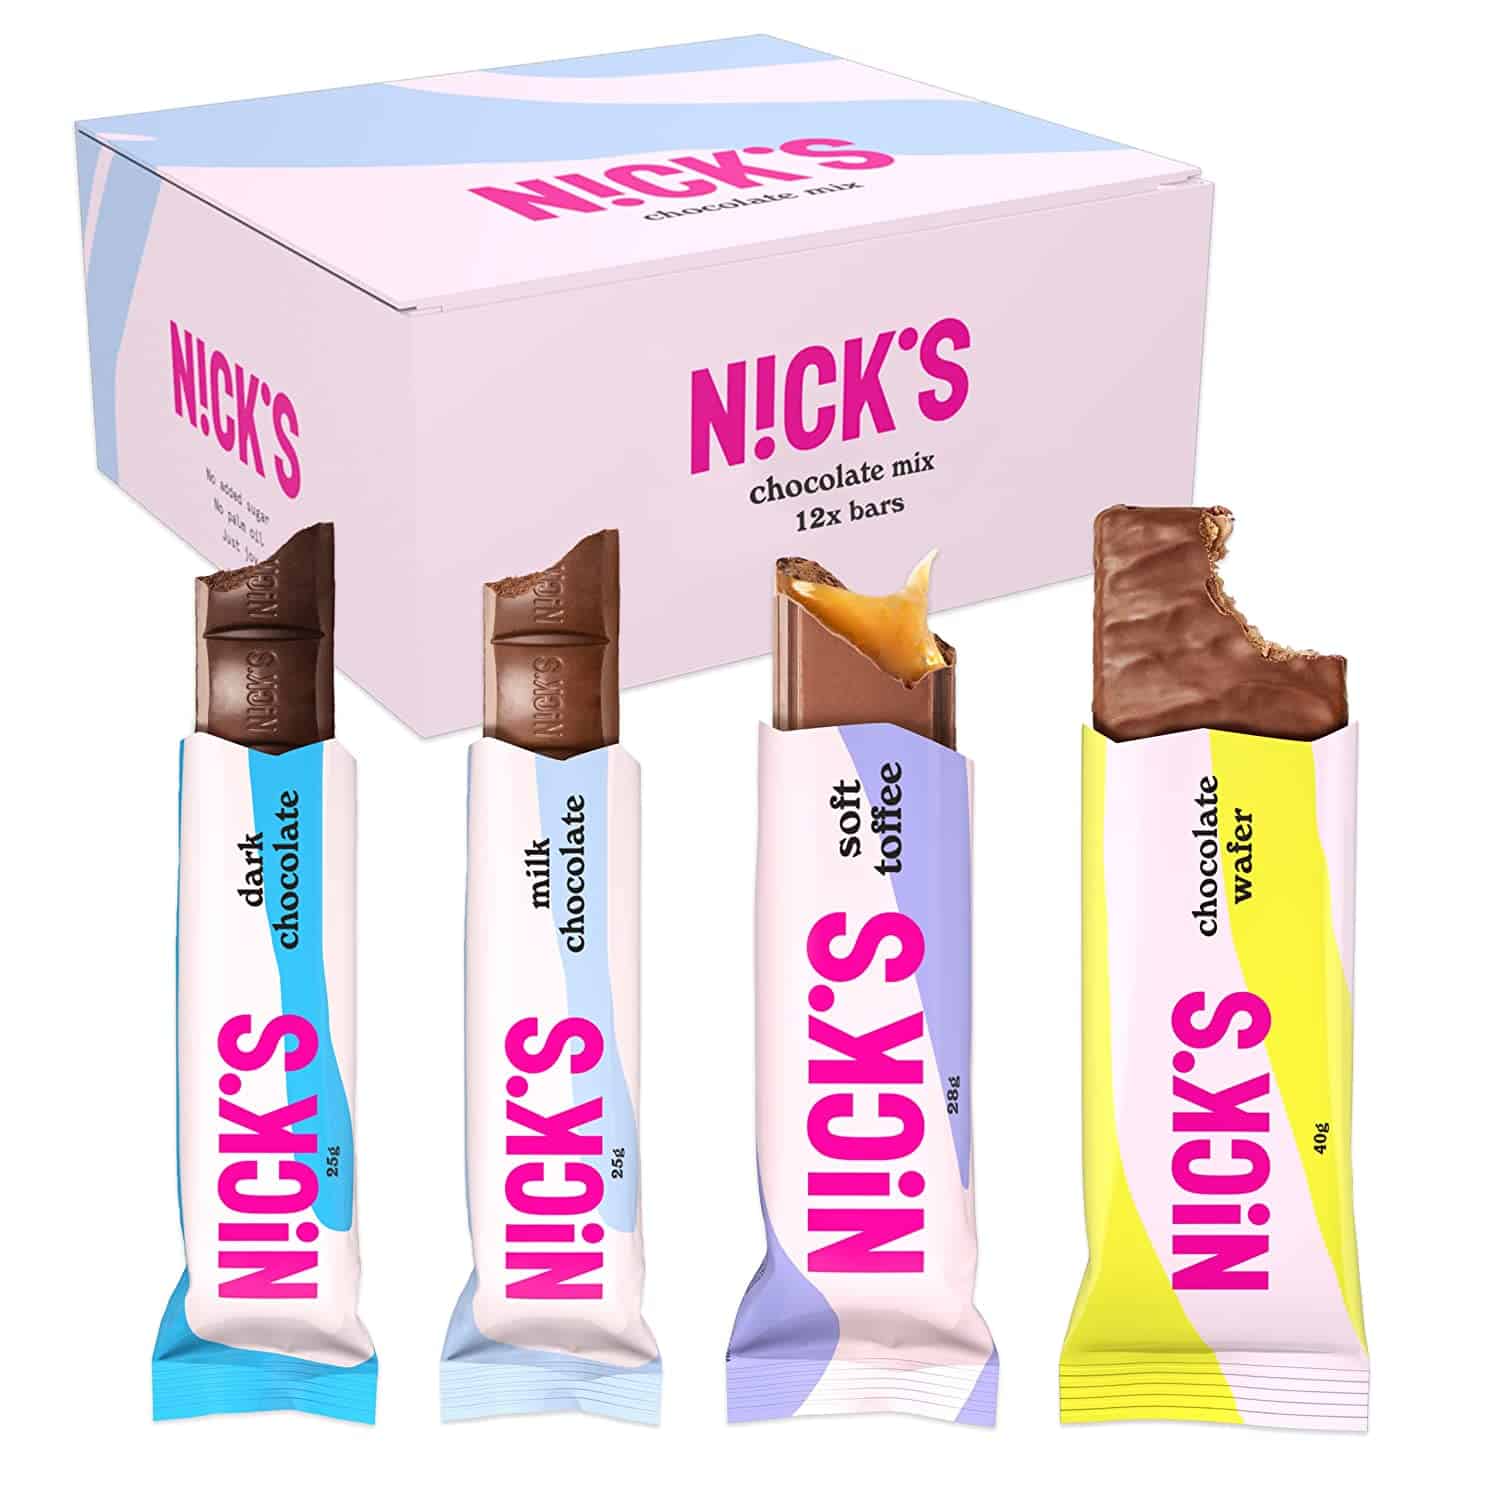 NICKS Riegel Chocolate Mix mit 12 verschiedenen Riegeln.jpg